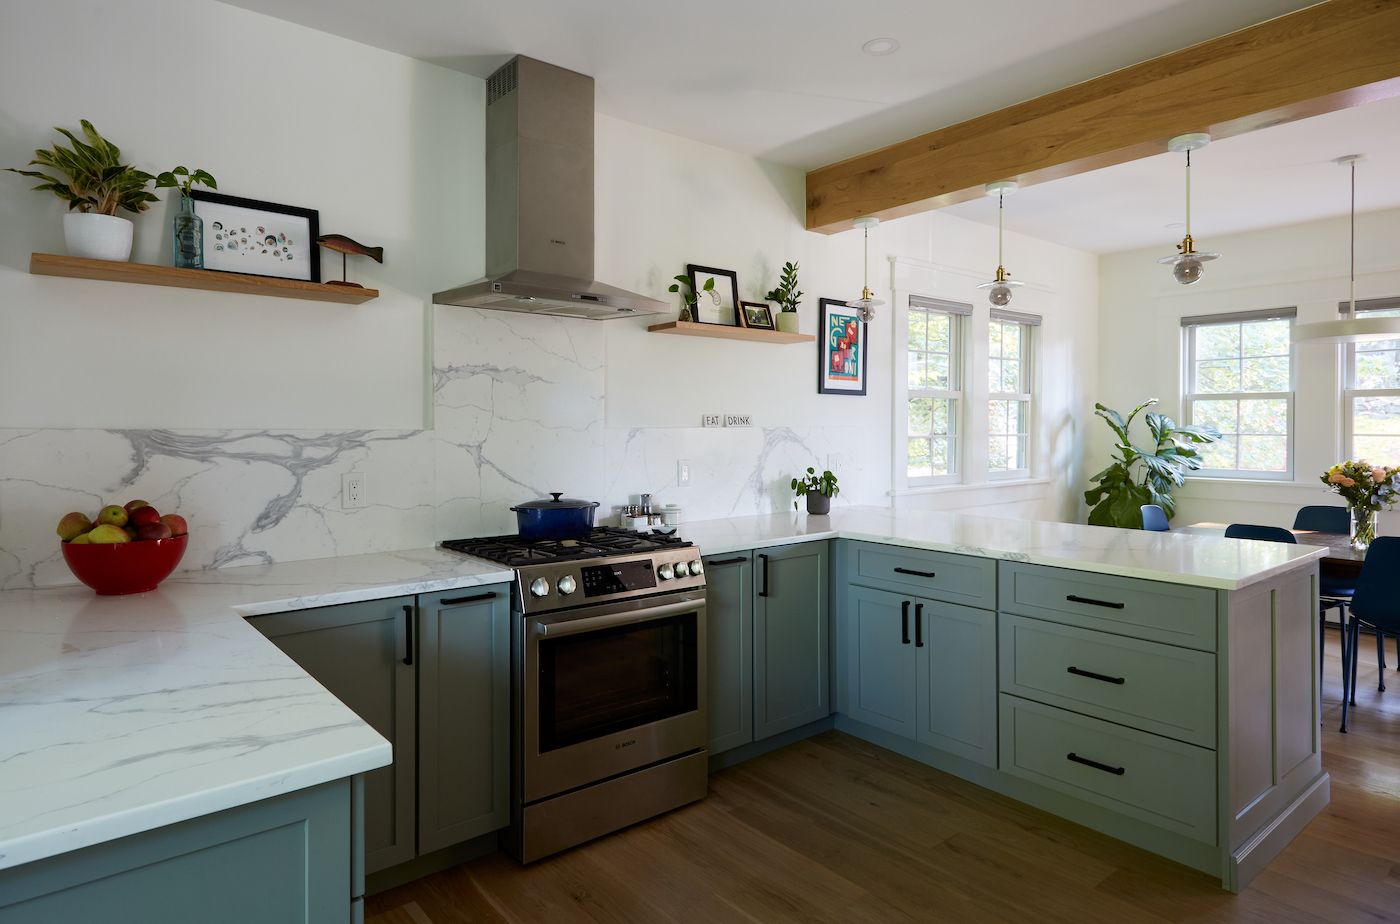 hopkins-clegg-architects-kitchen-renovation-3